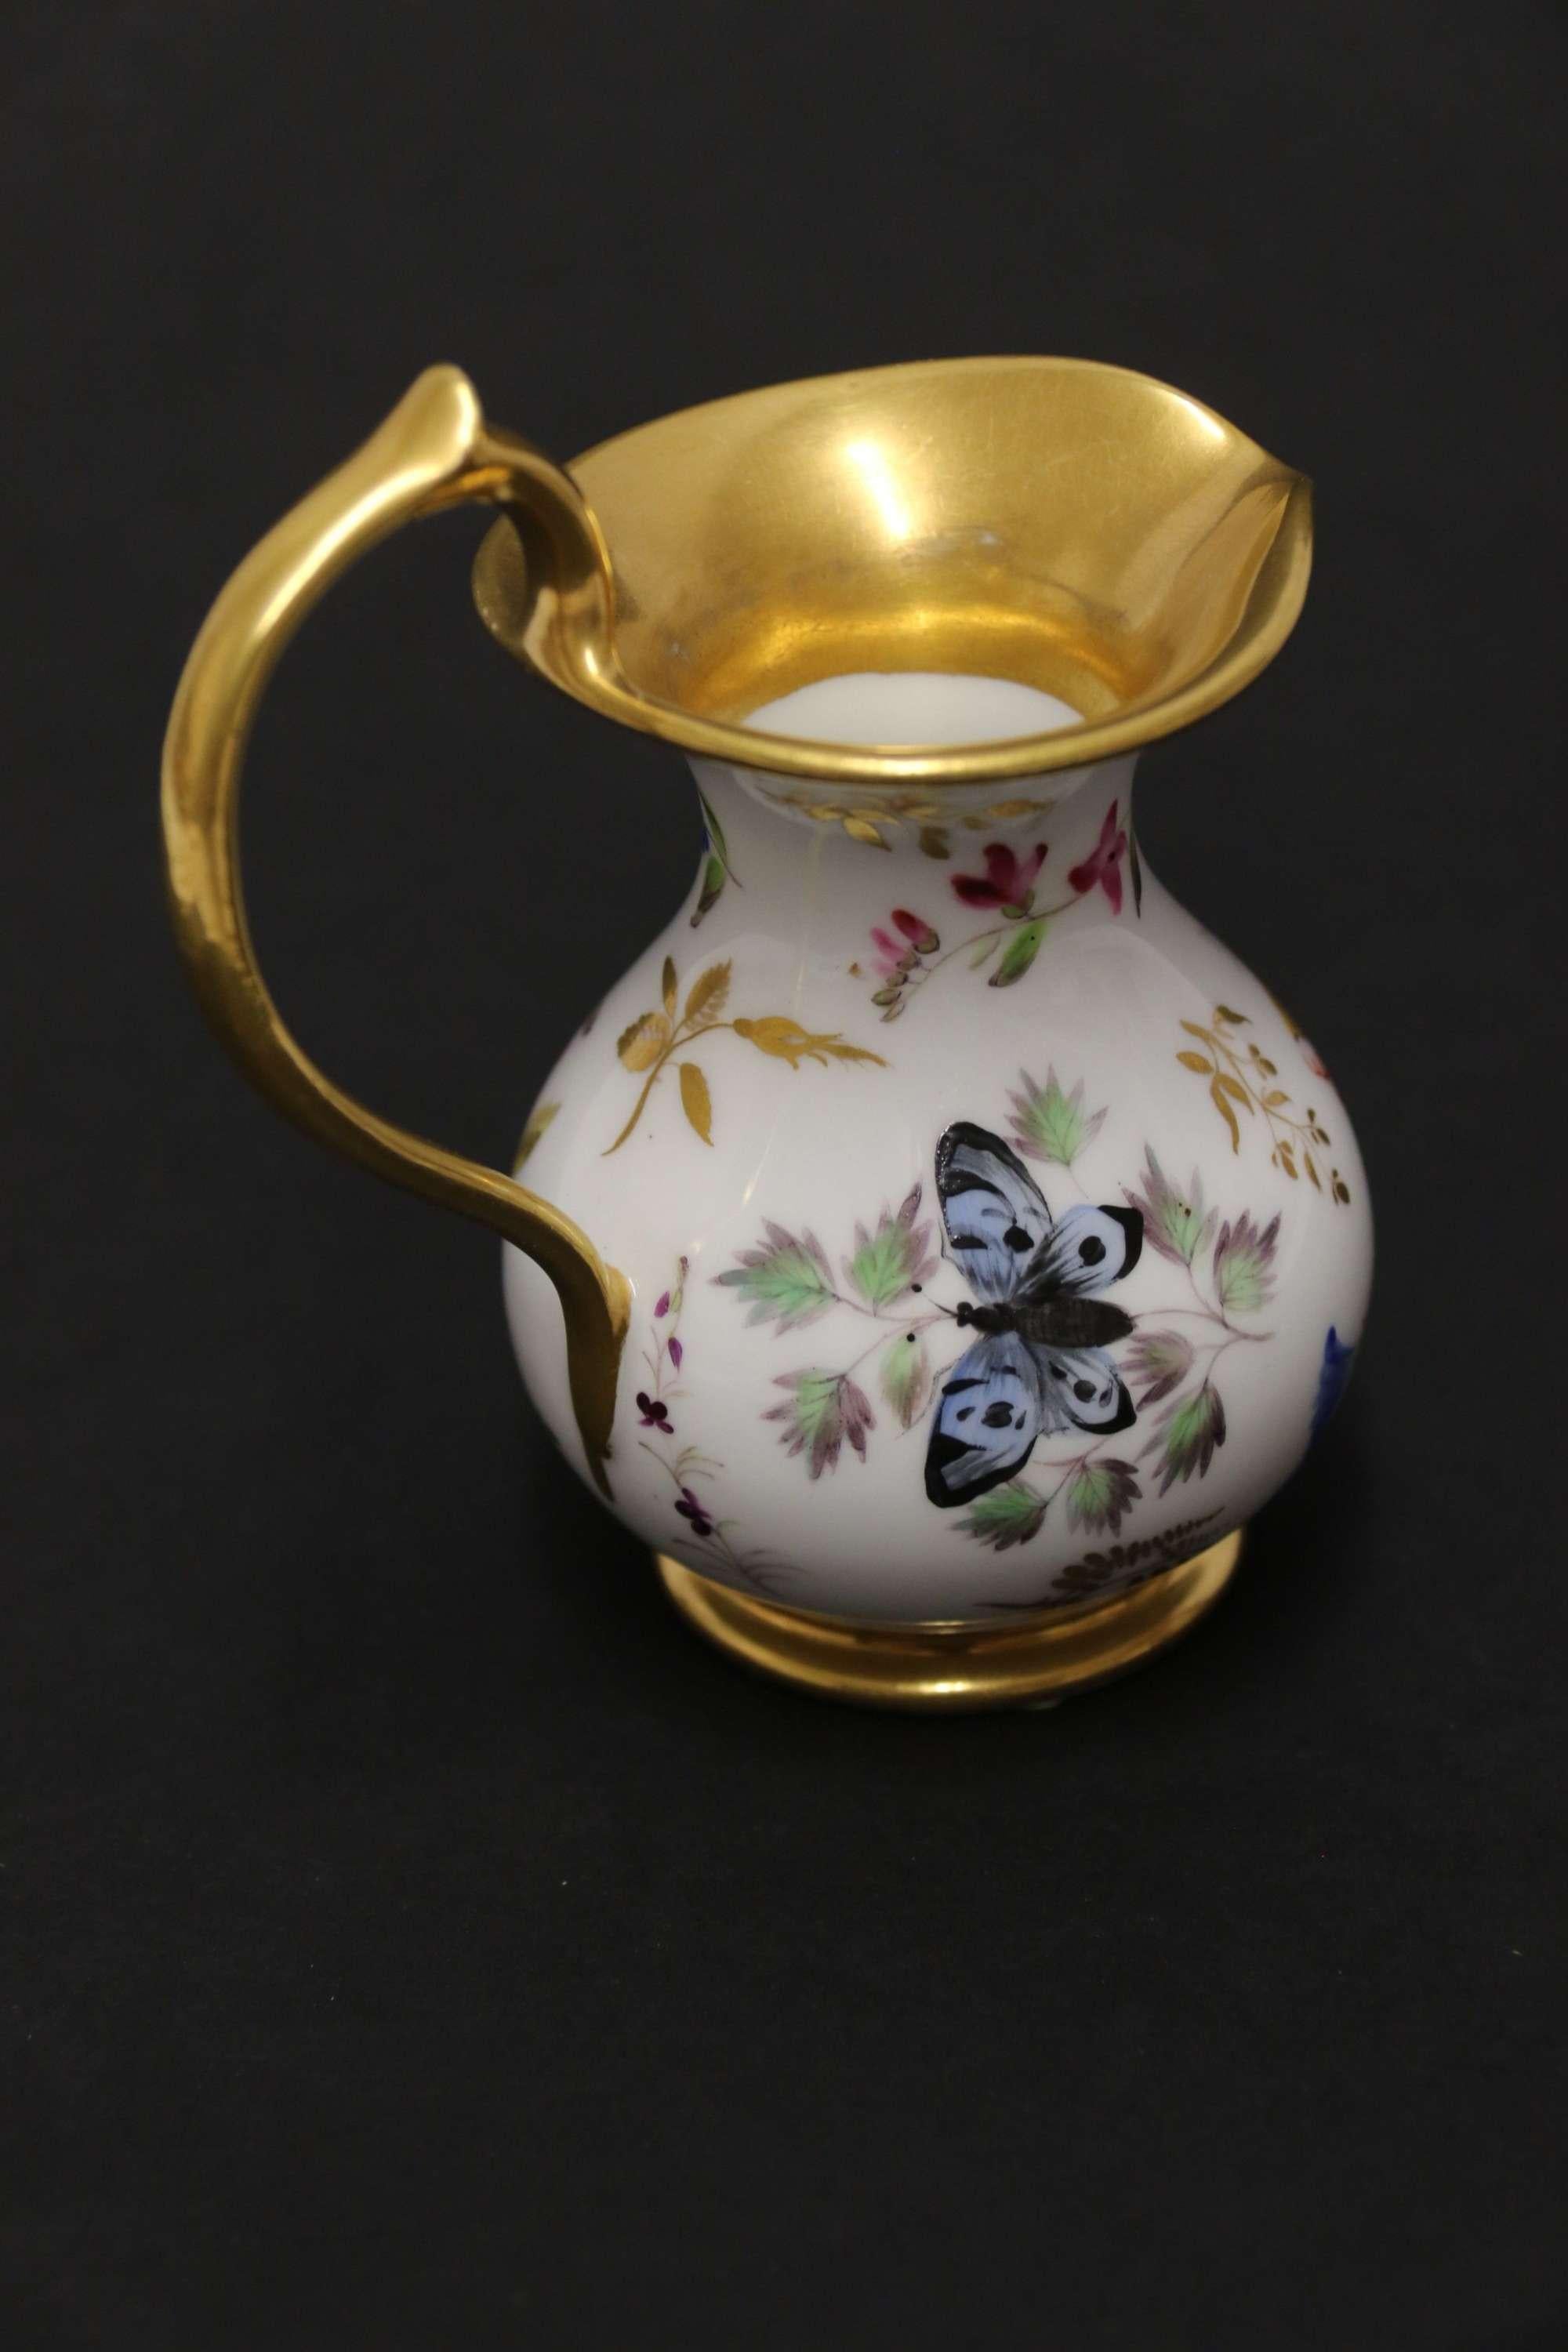 Eine feine Qualität frühen 19. Jahrhundert Französisch Porzellan Miniatur Ewer

Eine prächtige kleine französische Porzellankanne, um 1830, exquisit handbemalt mit einer Auswahl von Blumen, einer Muschel, einem Käfer und einem Schmetterling. Der